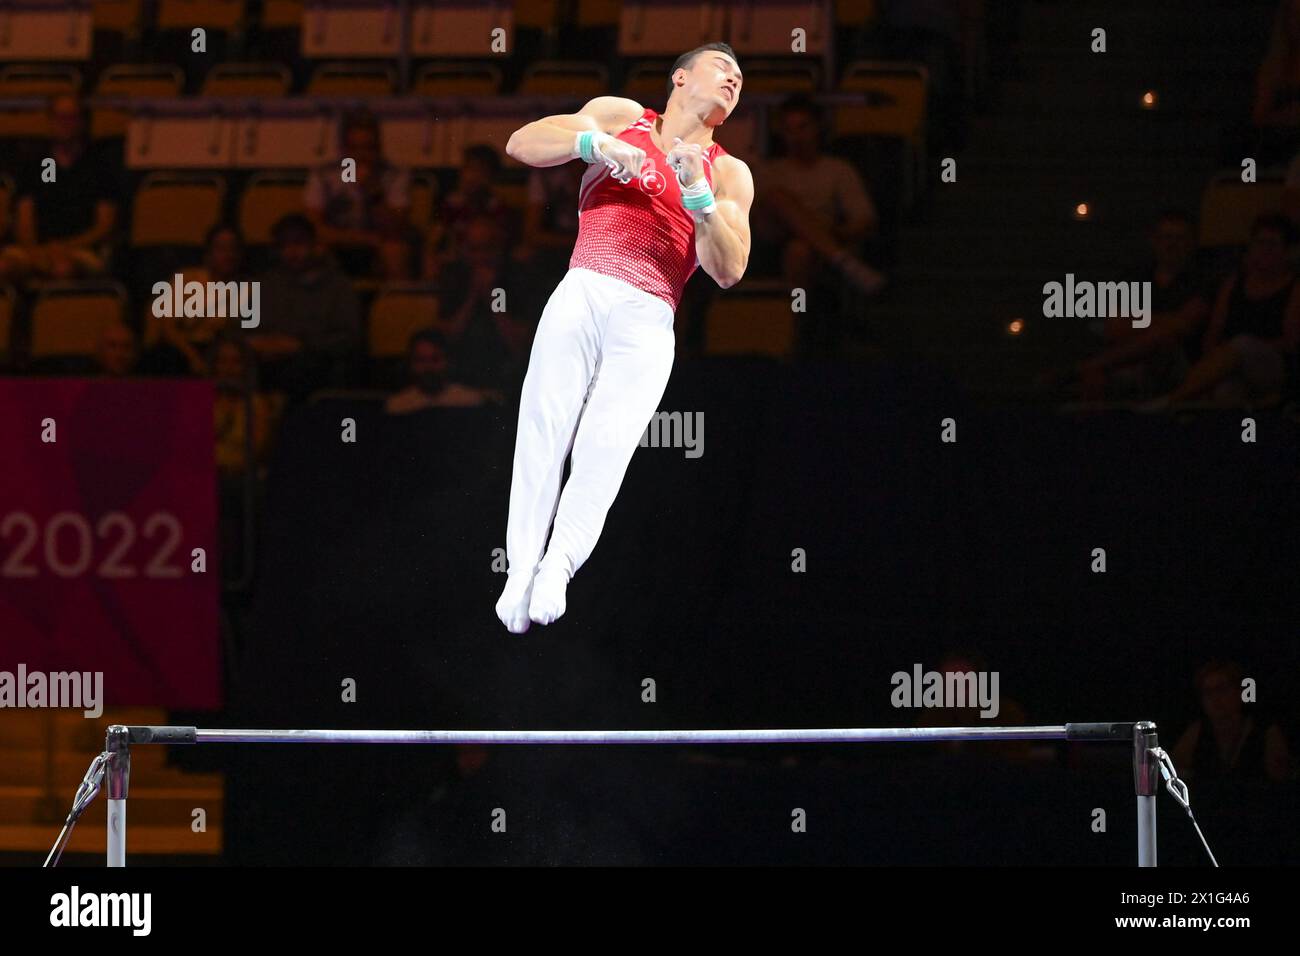 Ahmet Onder (Turquie). Championnats d'Europe Munich 2022 : gymnastique artistique, finale de barre horizontale masculine Banque D'Images